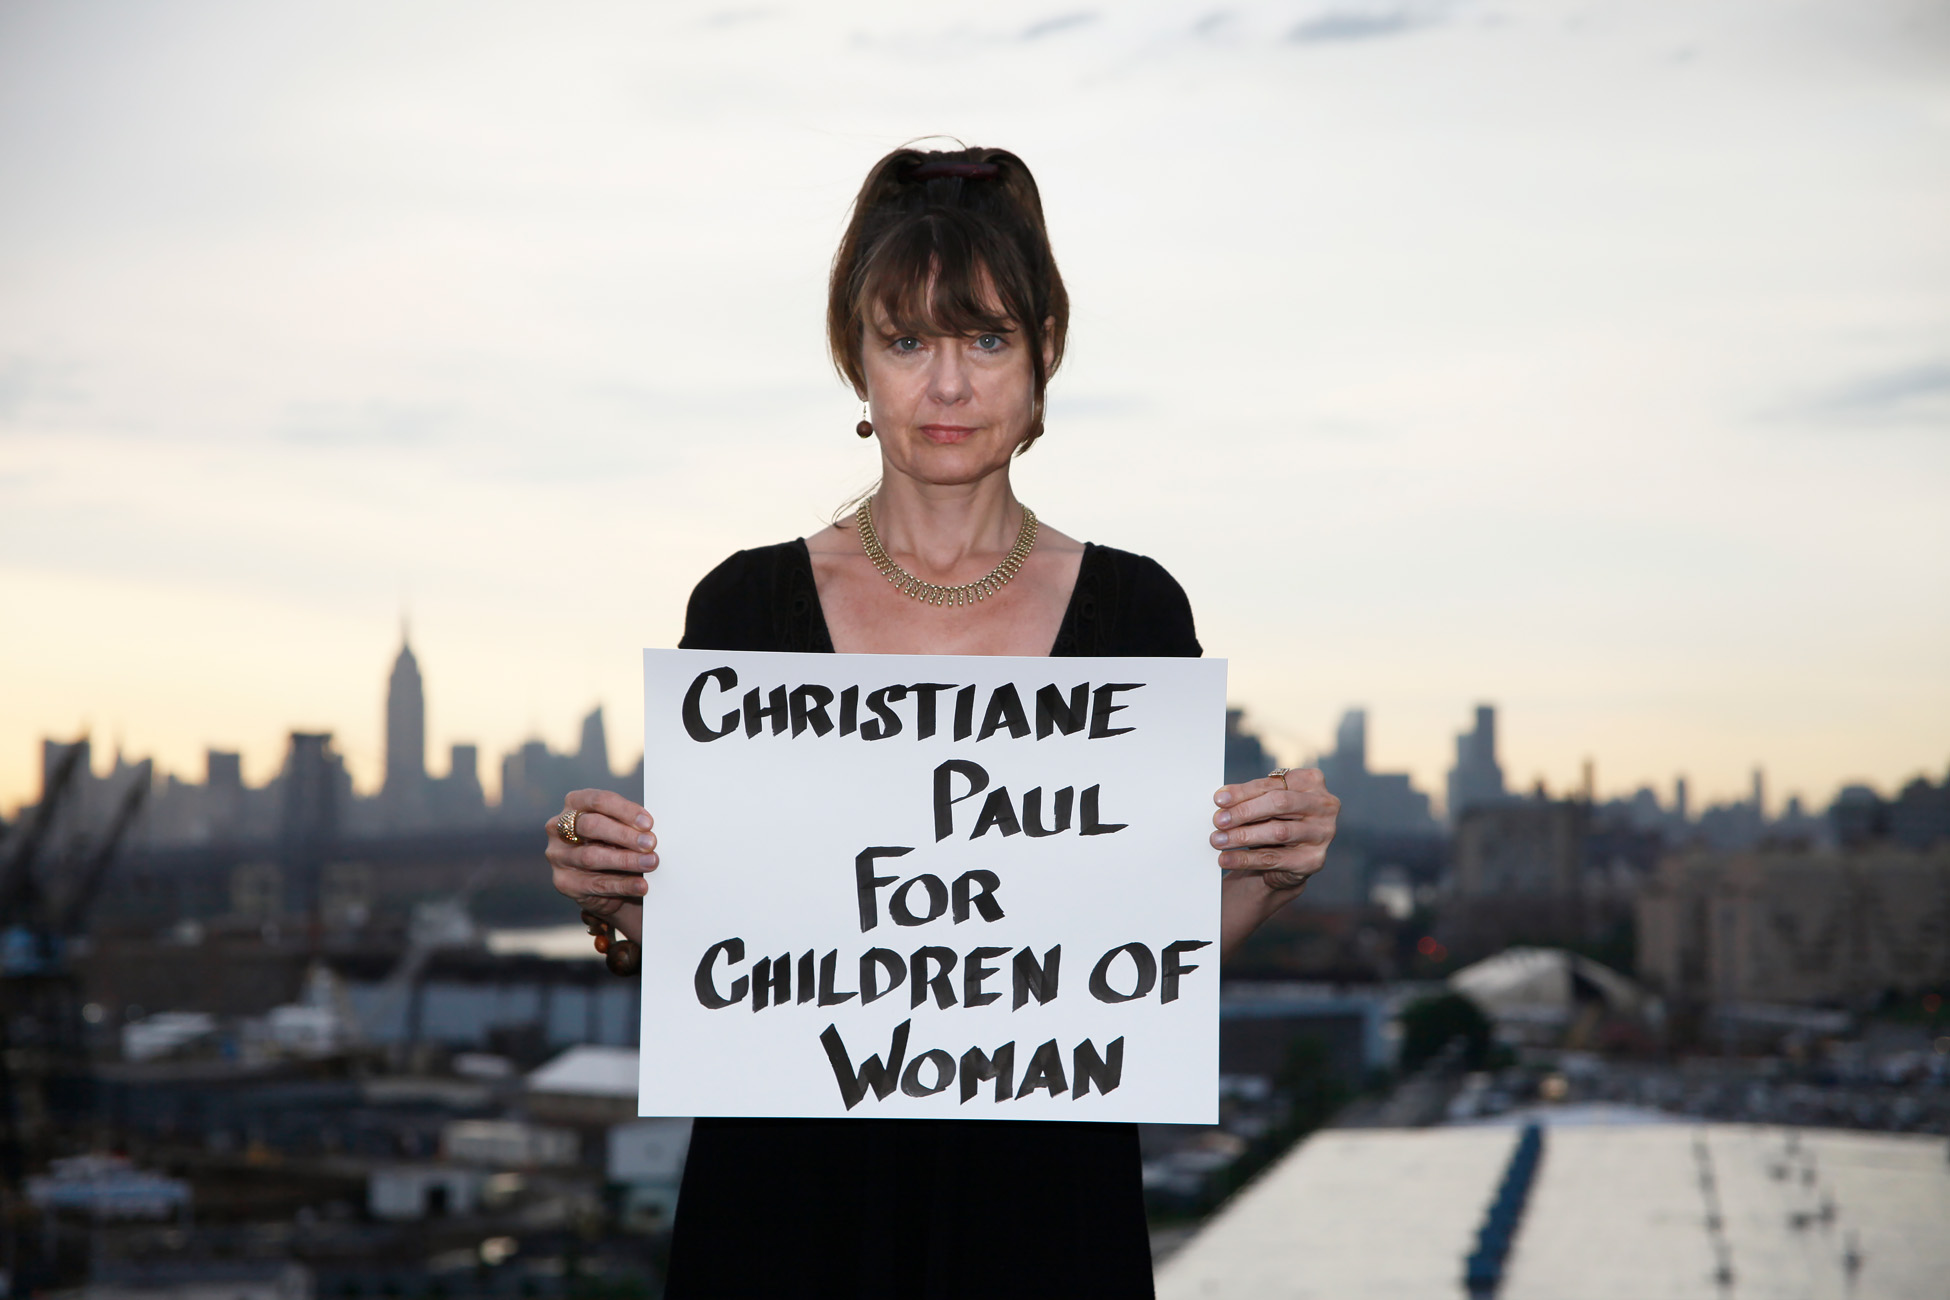 Christiane Paul for Children of Woman